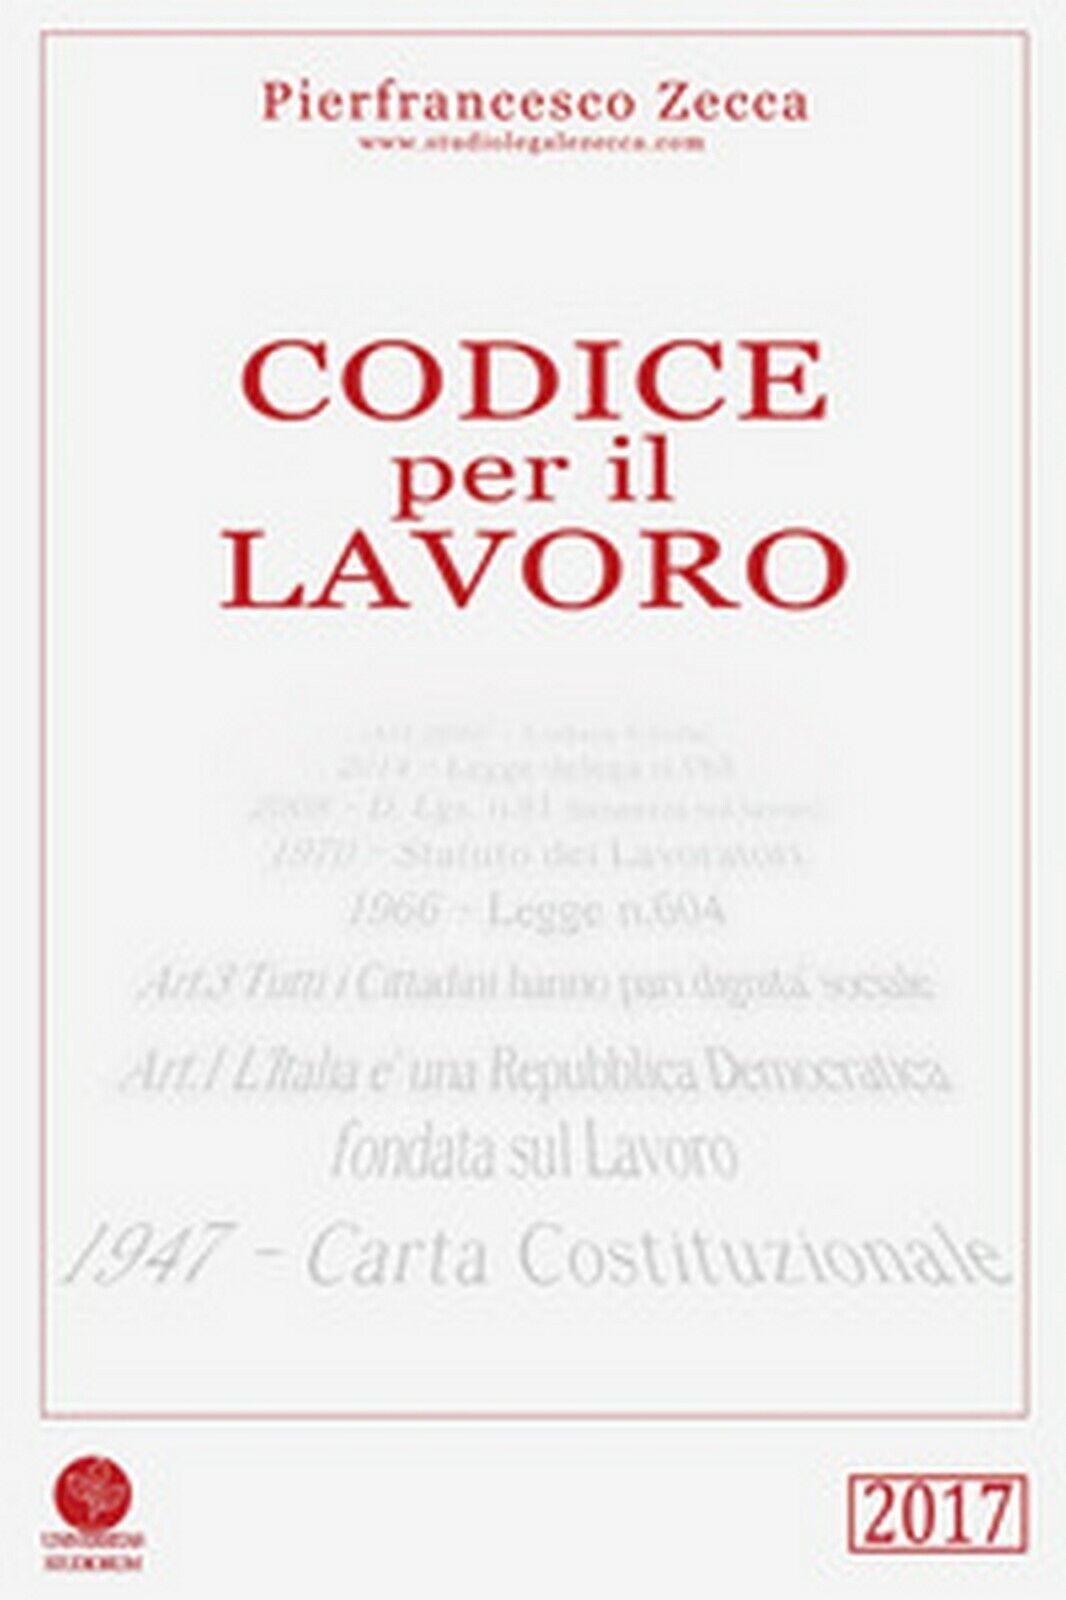 Codice per il lavoro  di Pierfrancesco Zecca,  2017,  Universitas Studiorum